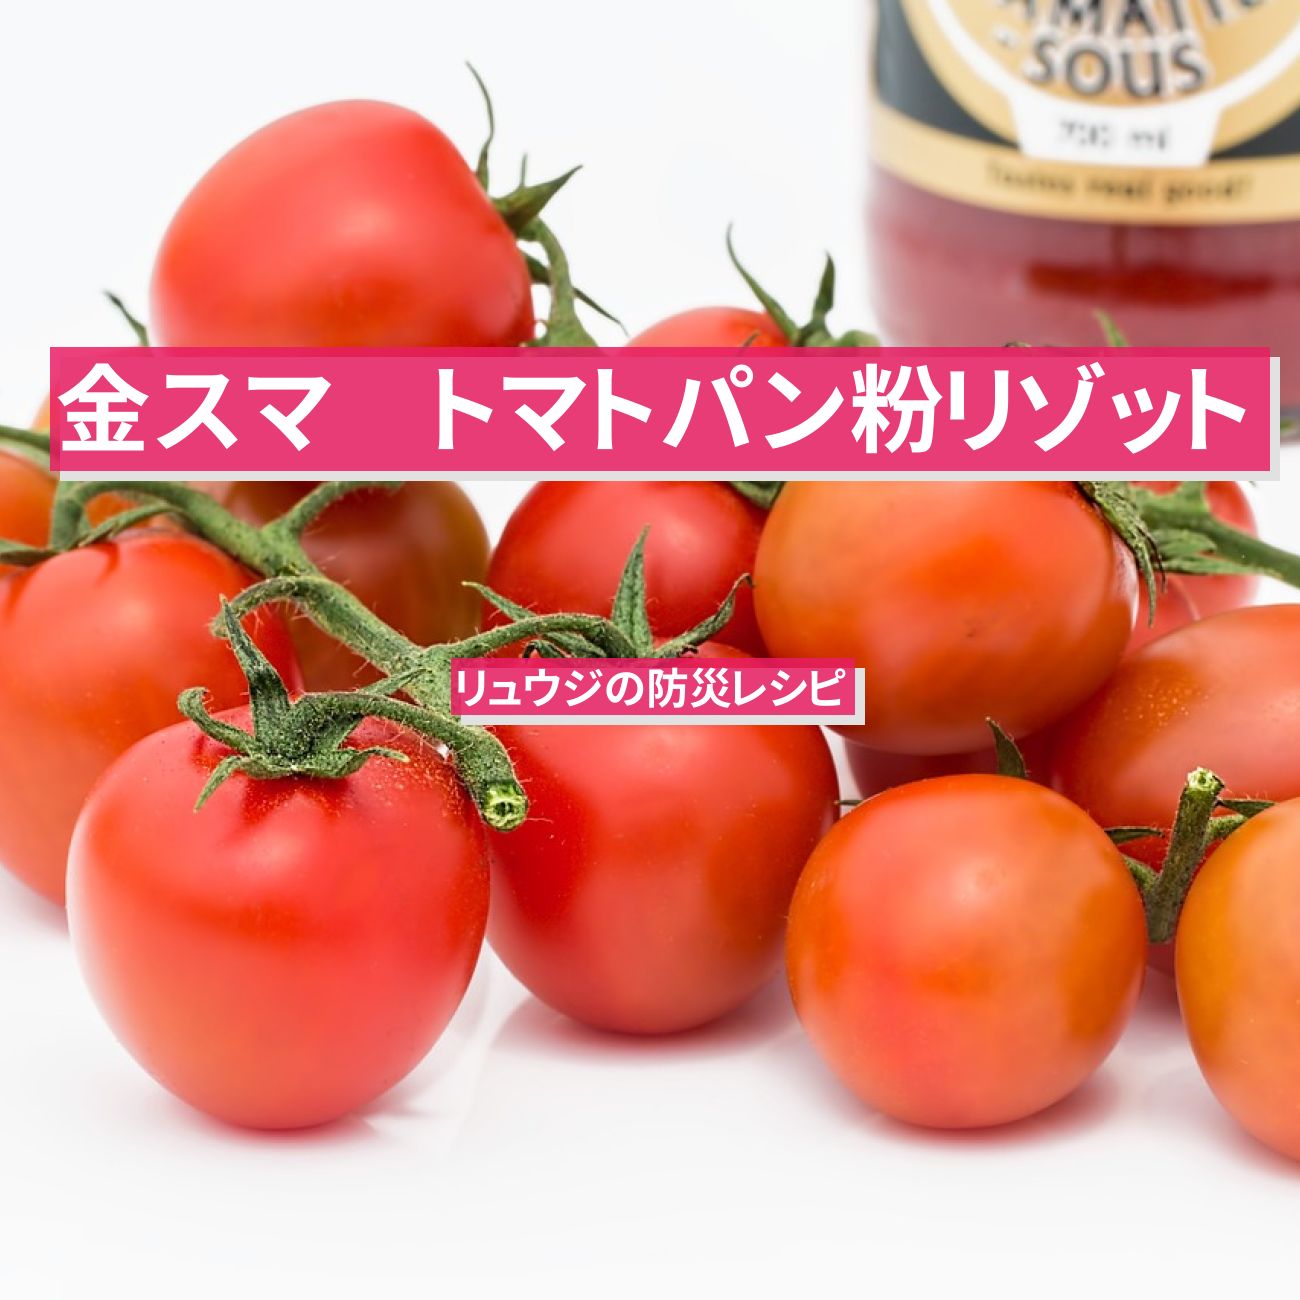 【金スマ】『トマトパン粉リゾット』リュウジの防災レシピ